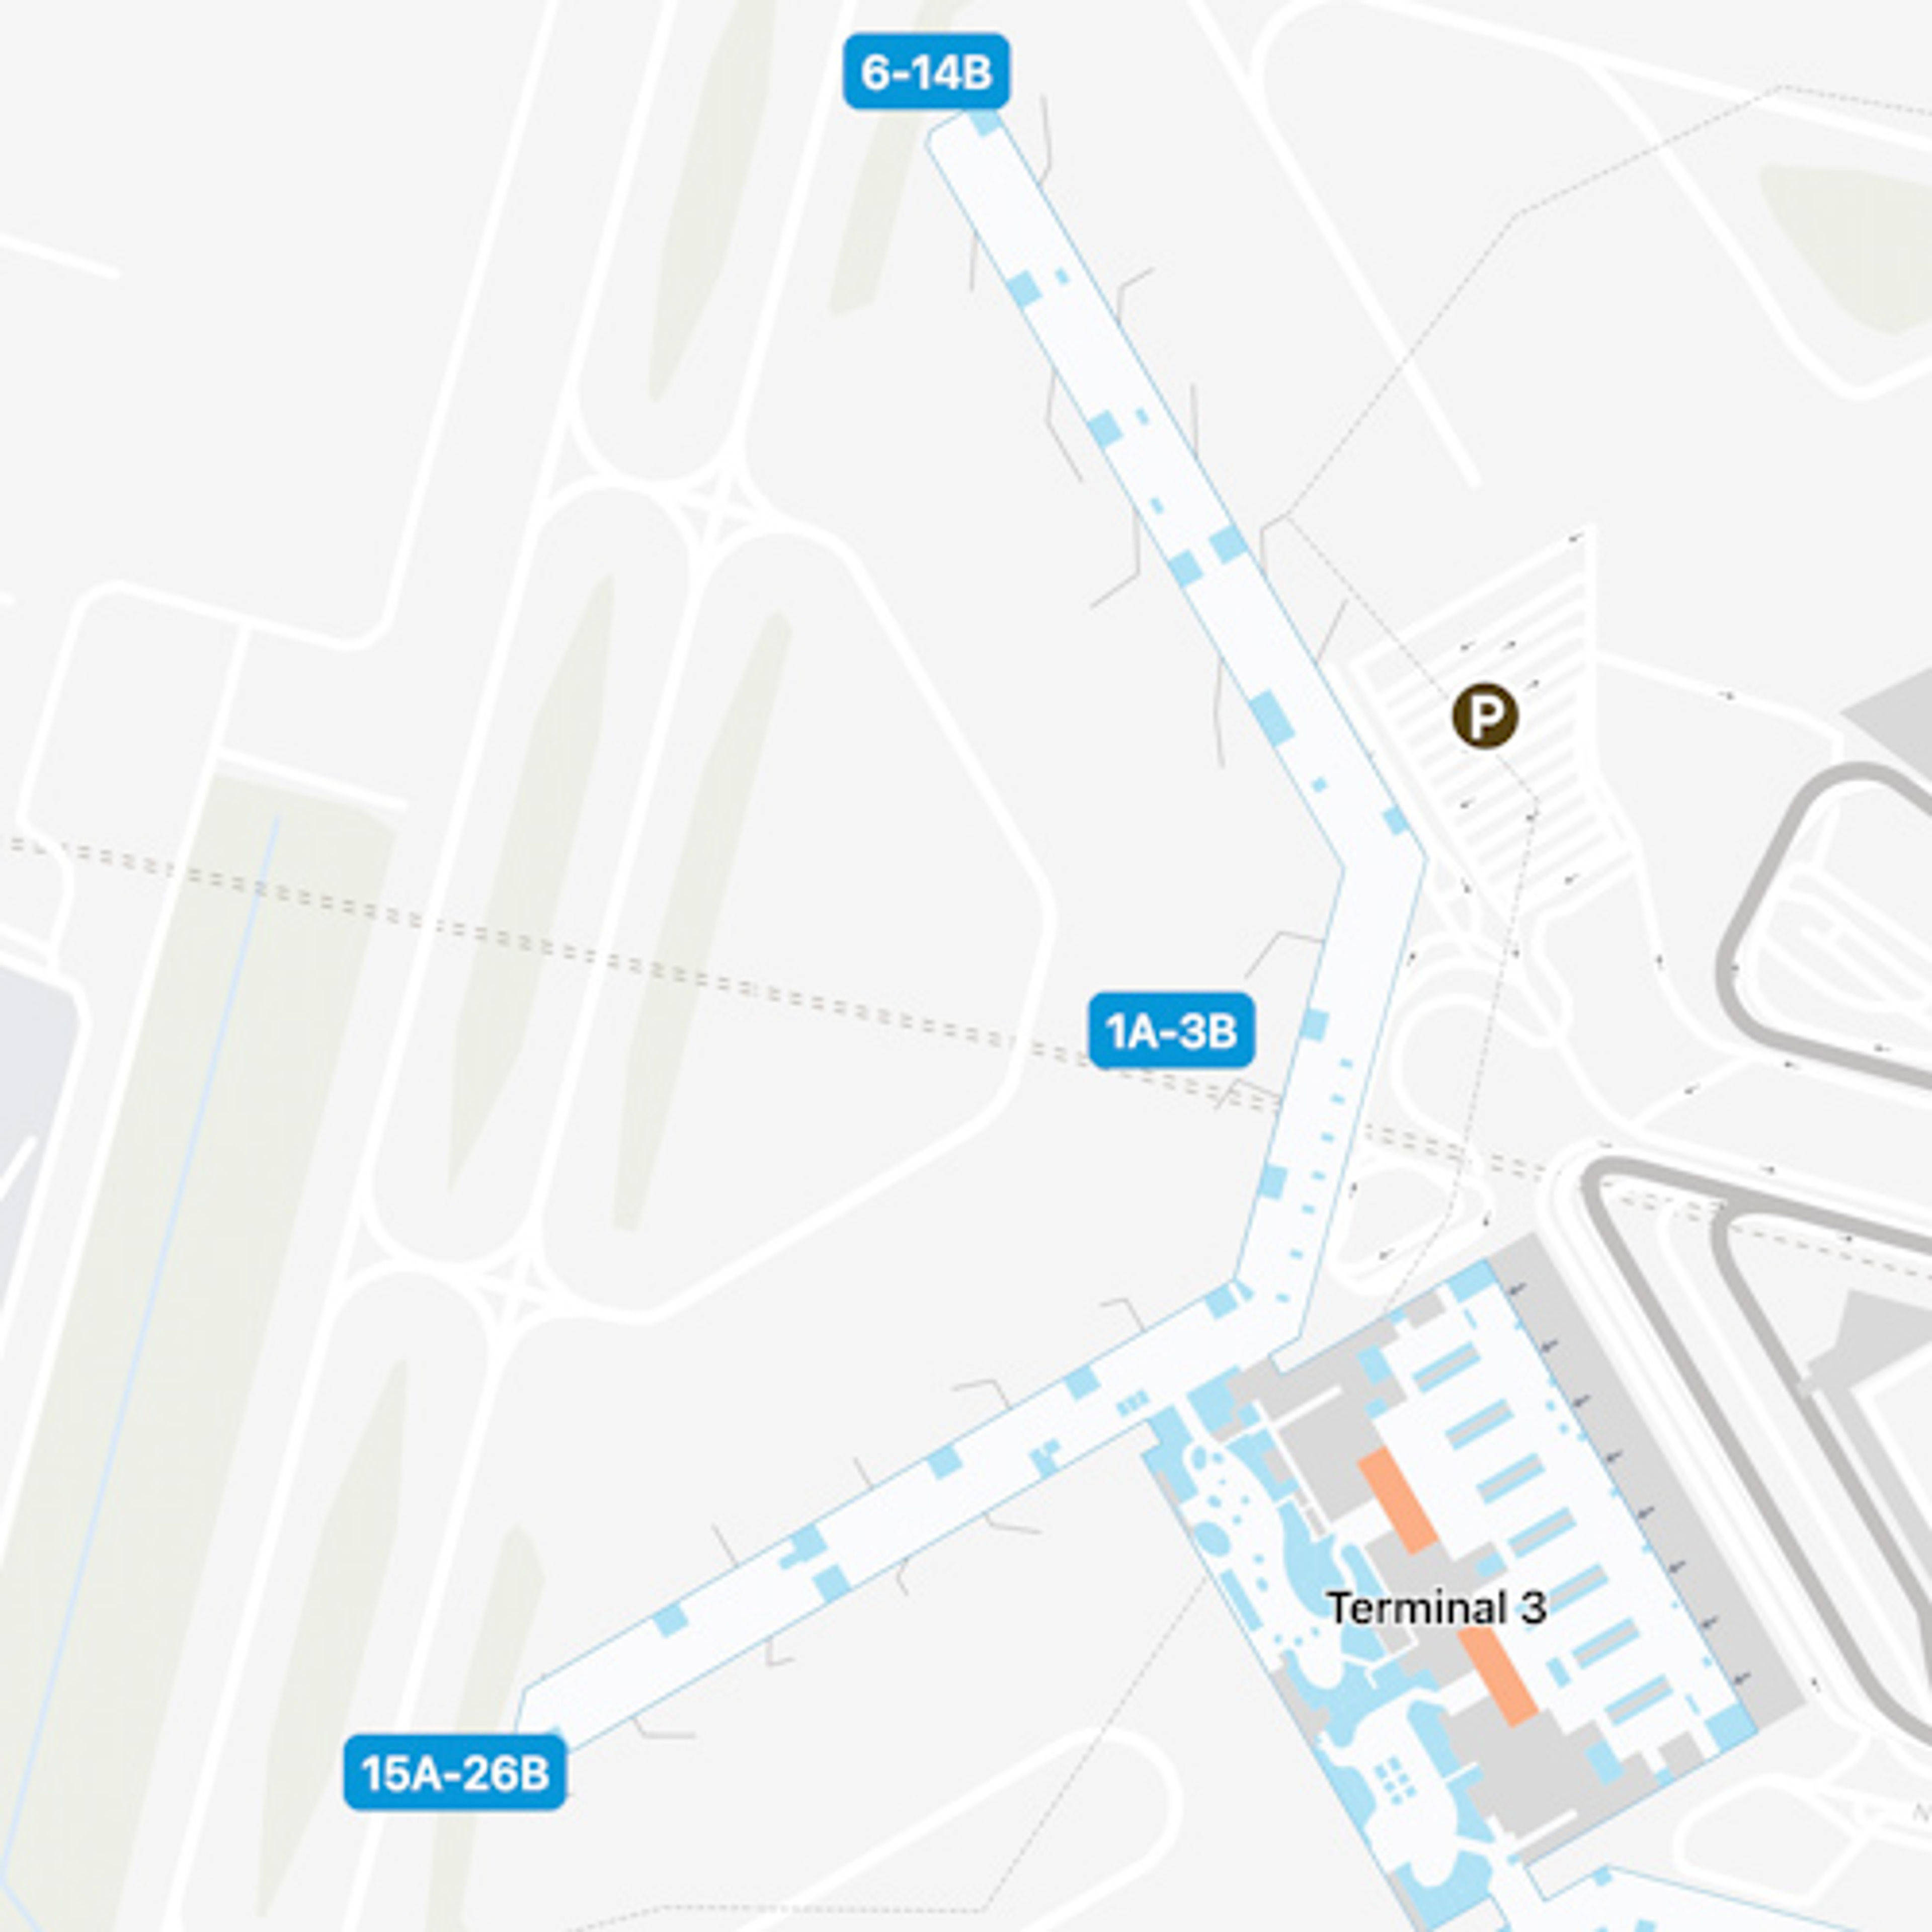 New Delhi Airport Intl Terminal Map